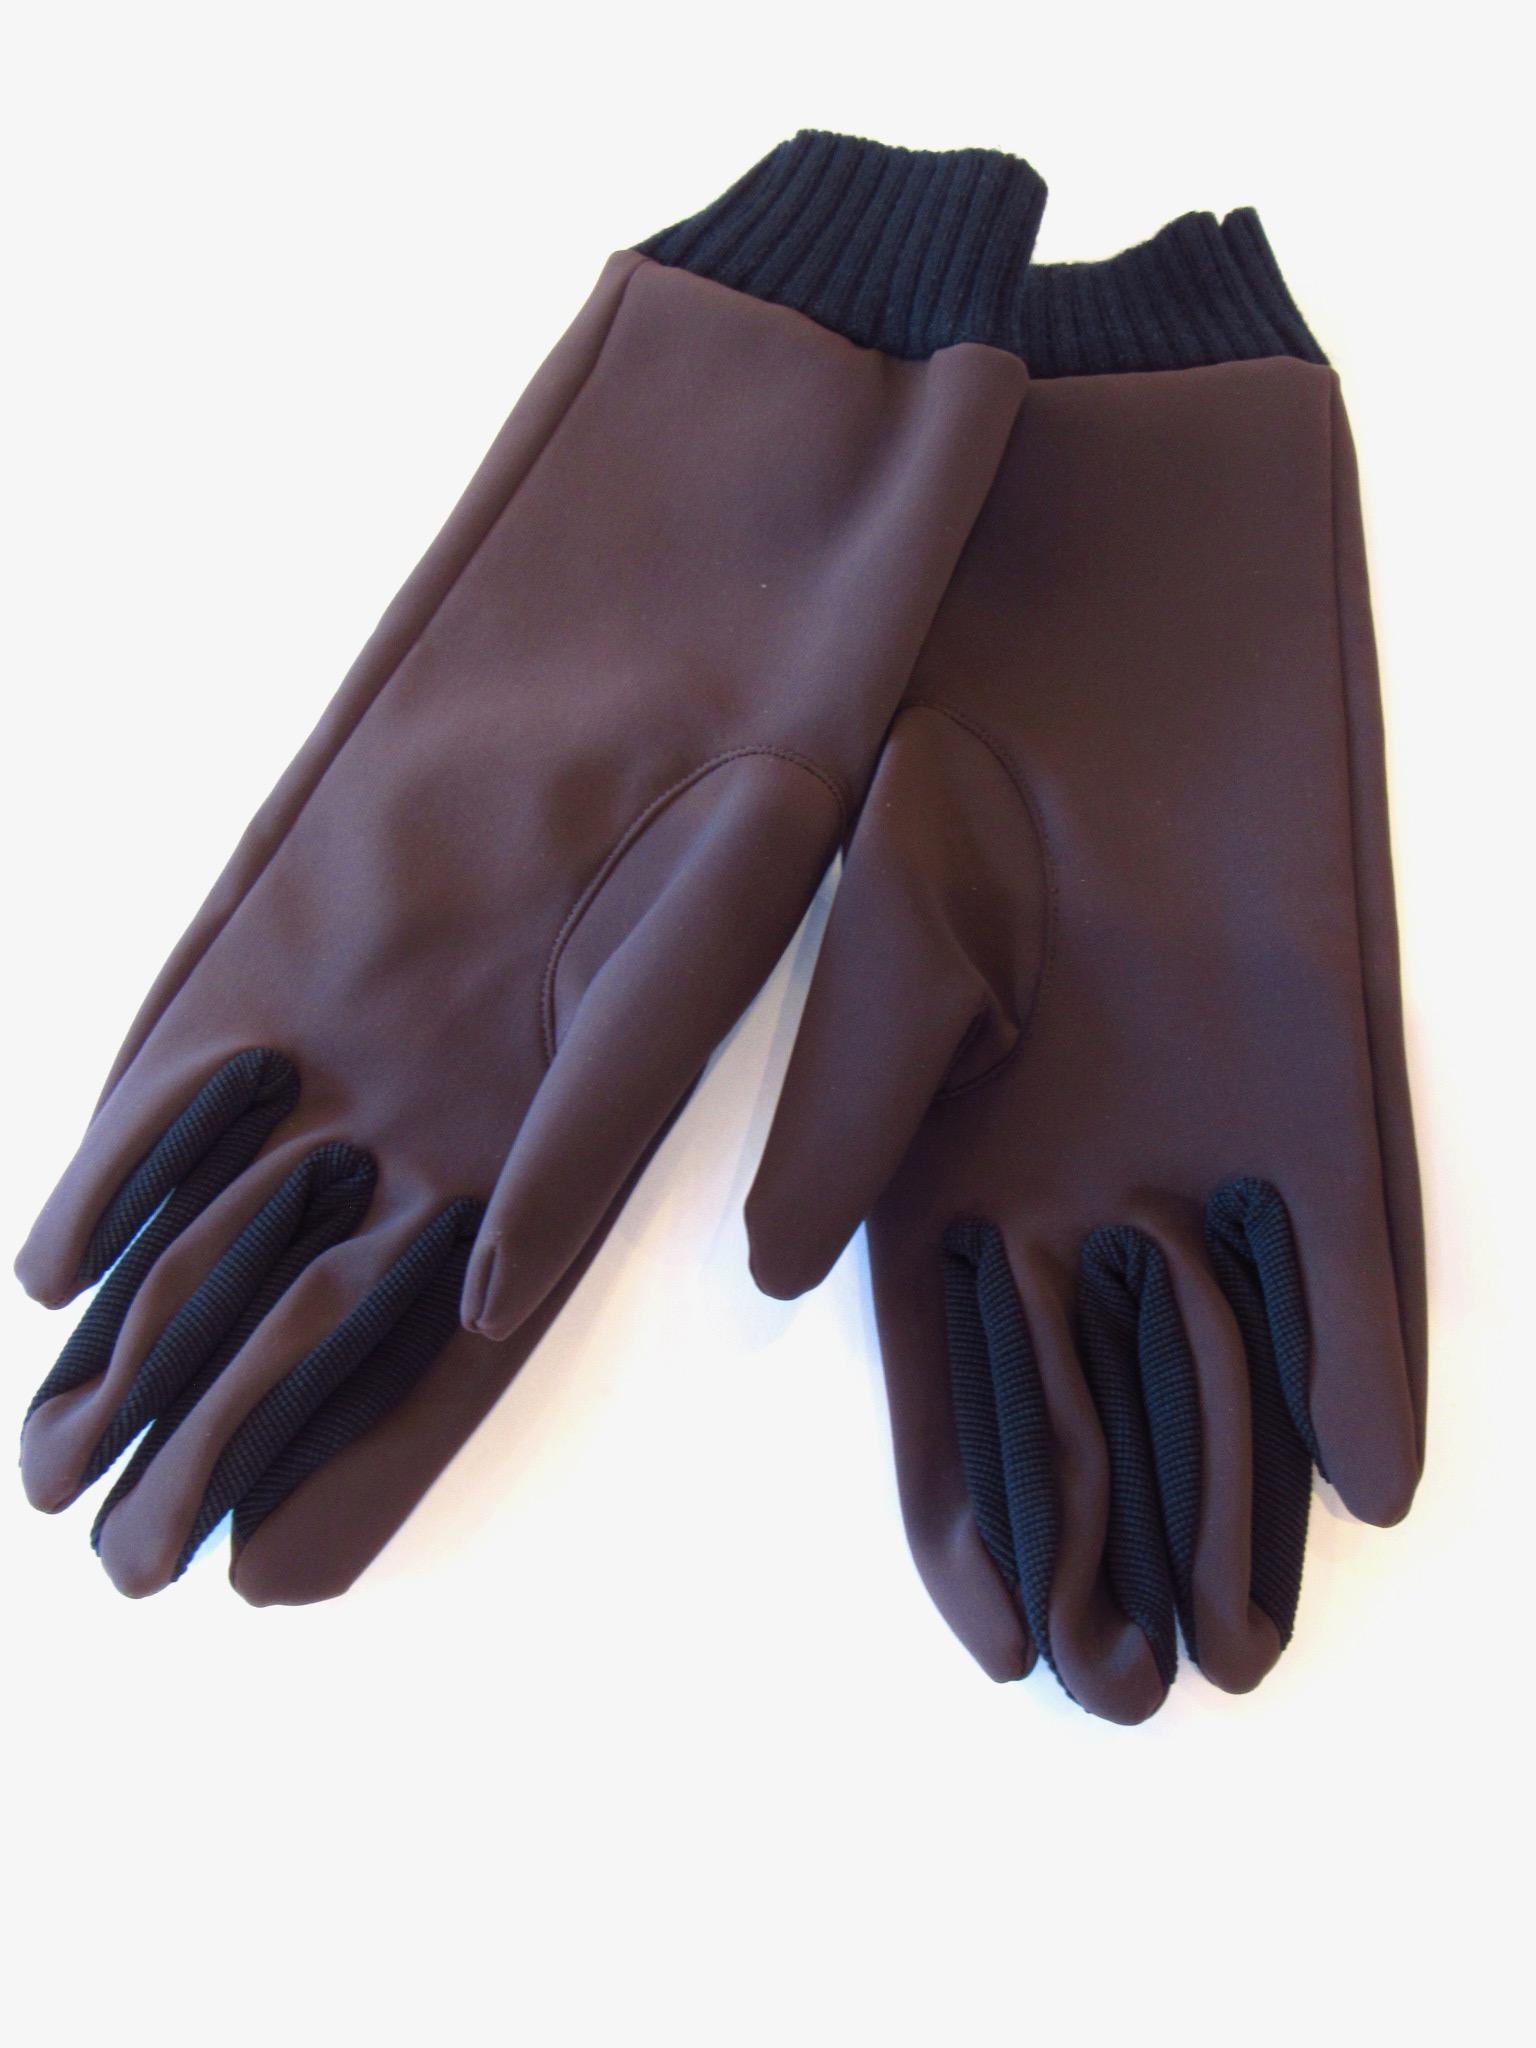 Black Undercover Nylon Gloves   For Sale